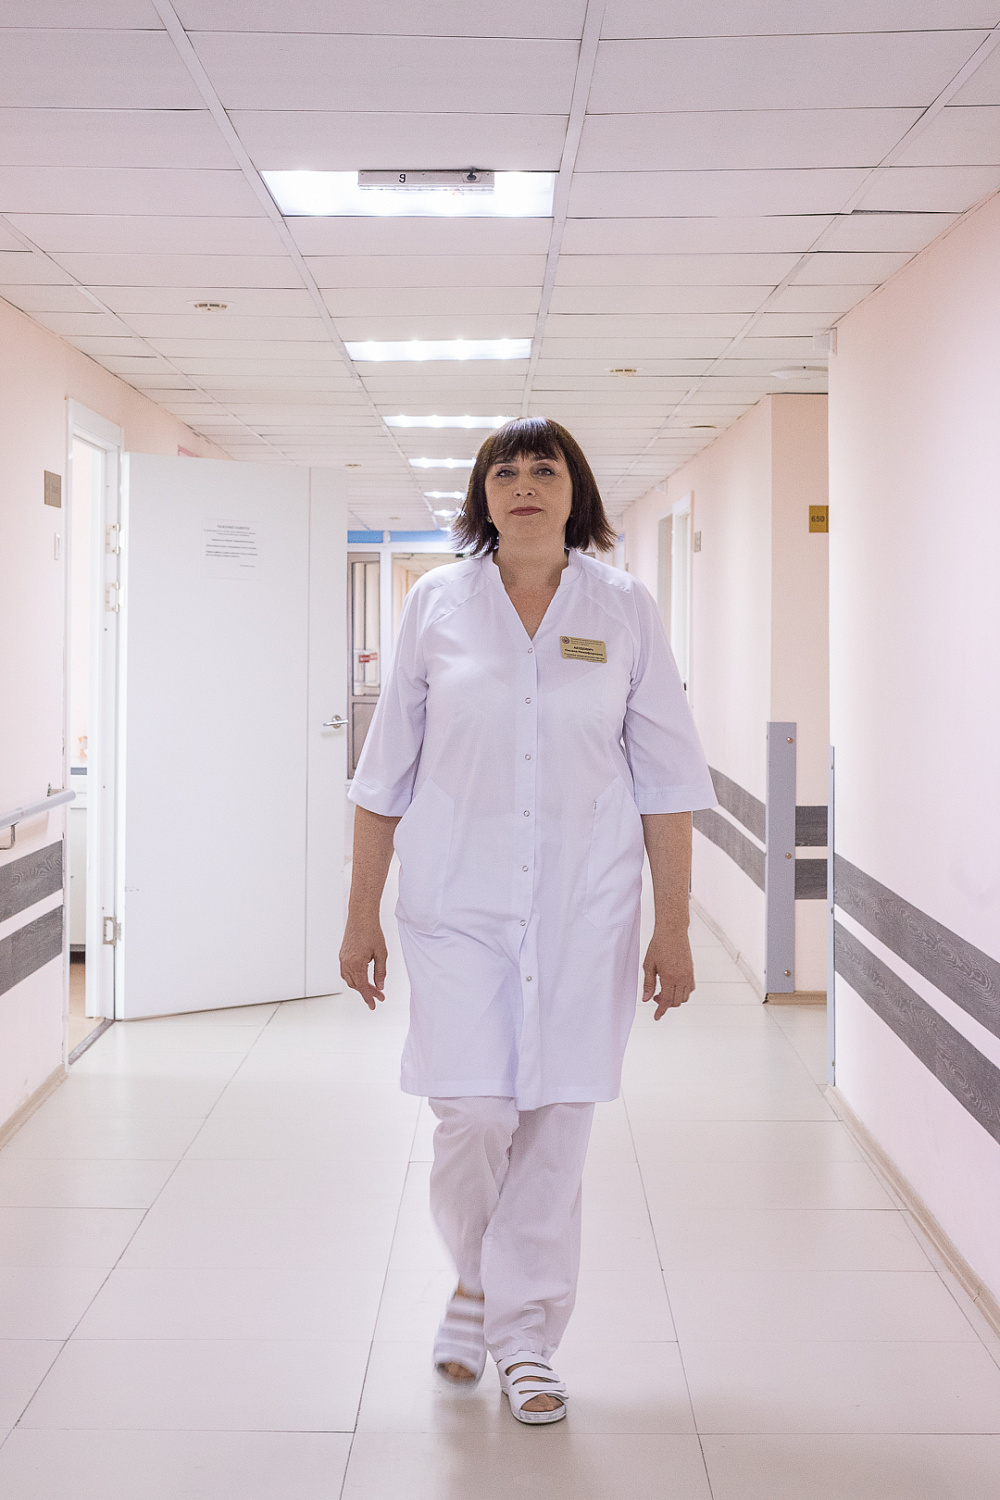 Лучшая старшая медицинская сестра работает в Красноярской межрайонной клинической больнице скорой медицинской помощи имени Н.С. Карповича